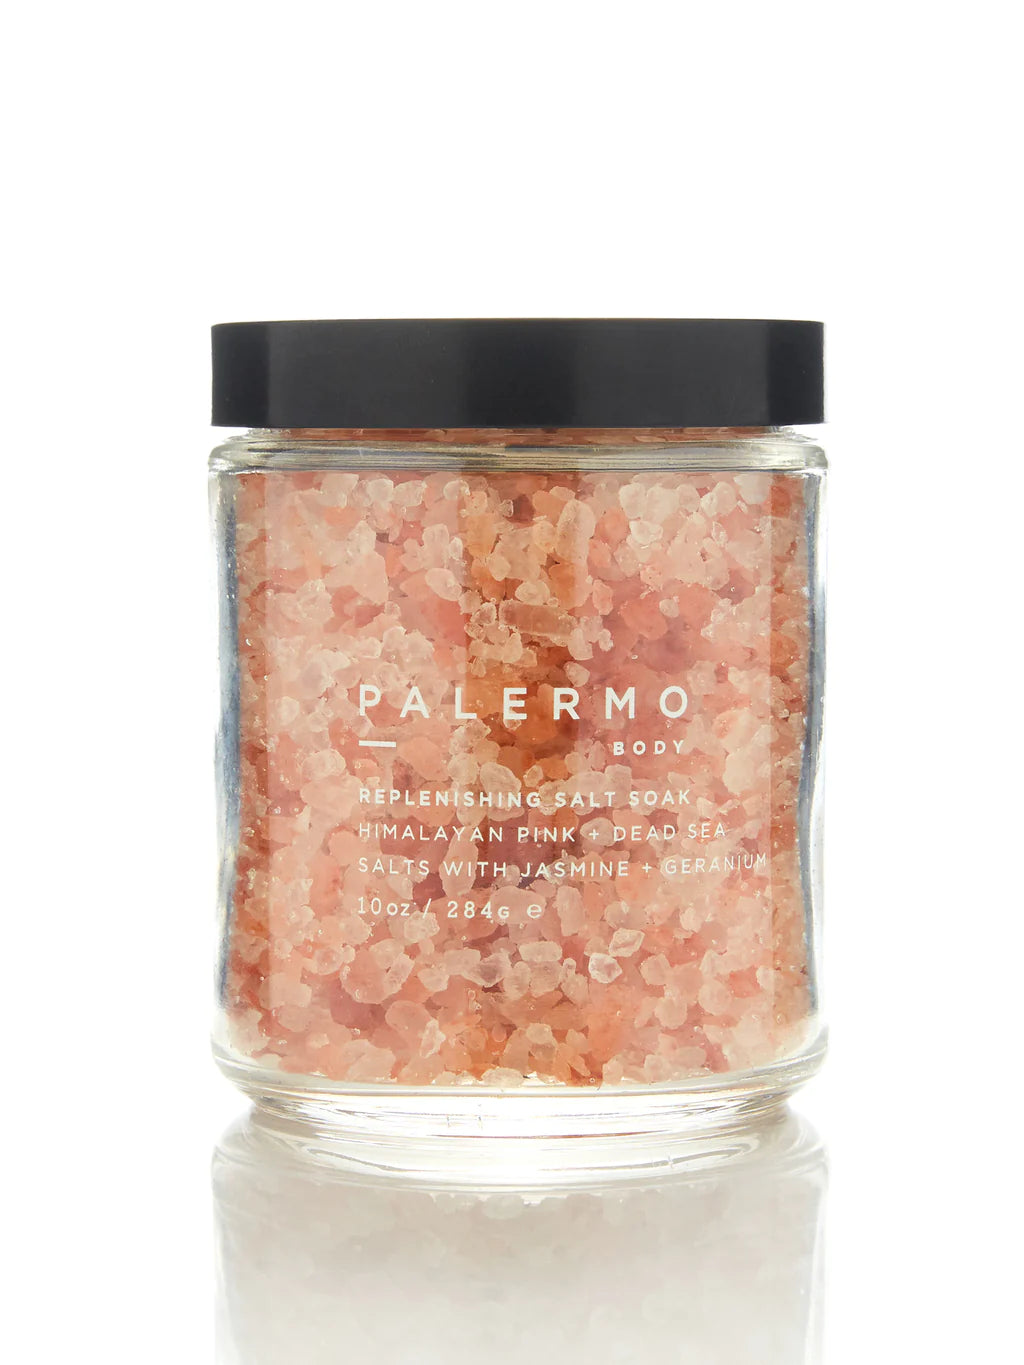 Palermo Body Replenishing Salt Soak